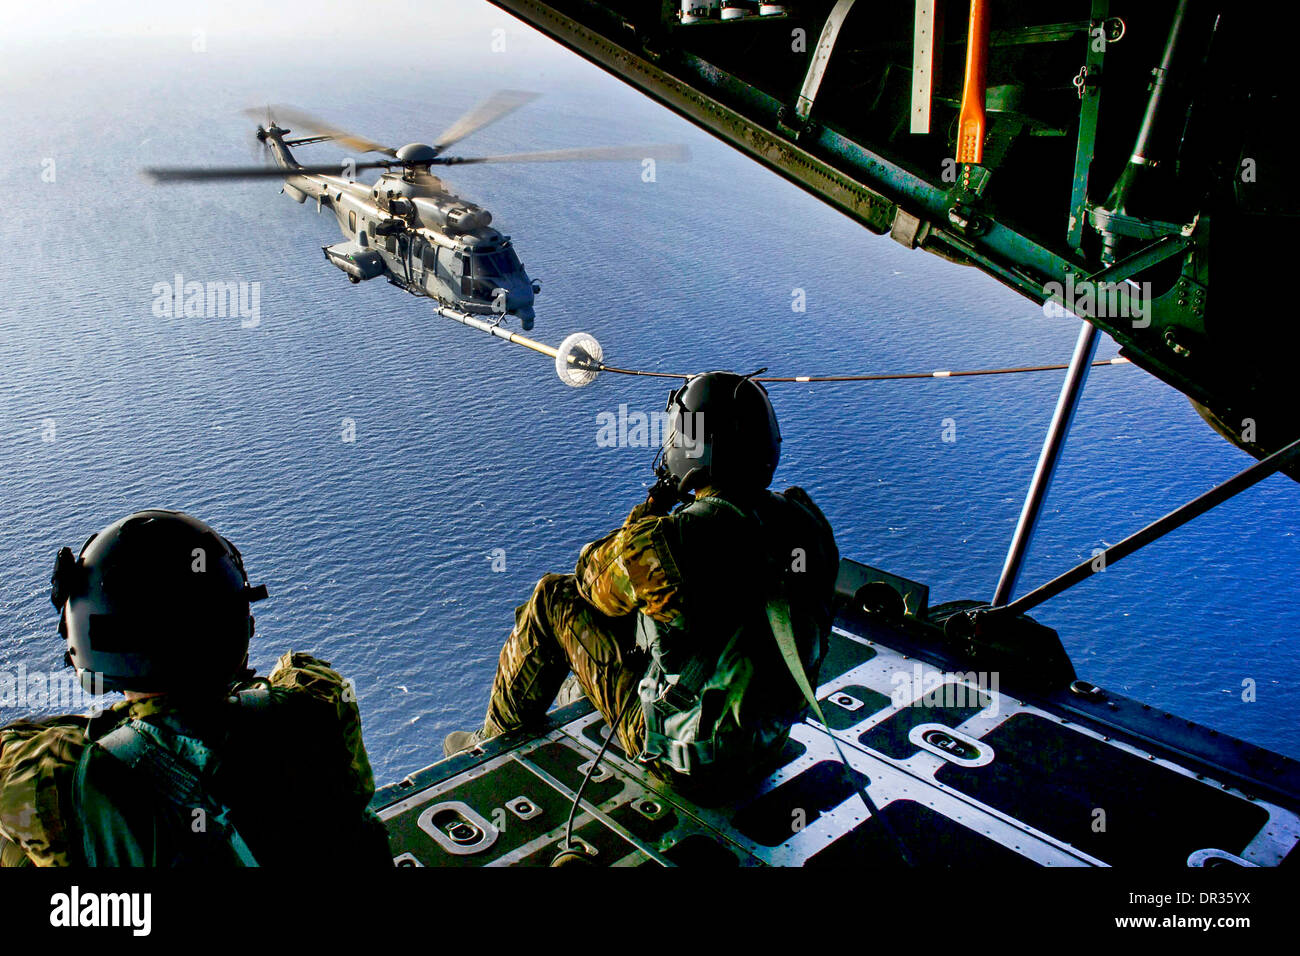 Les arrimeurs regarder comme une armée de l'air française Eurocopter aerial refueling pratiques Banque D'Images